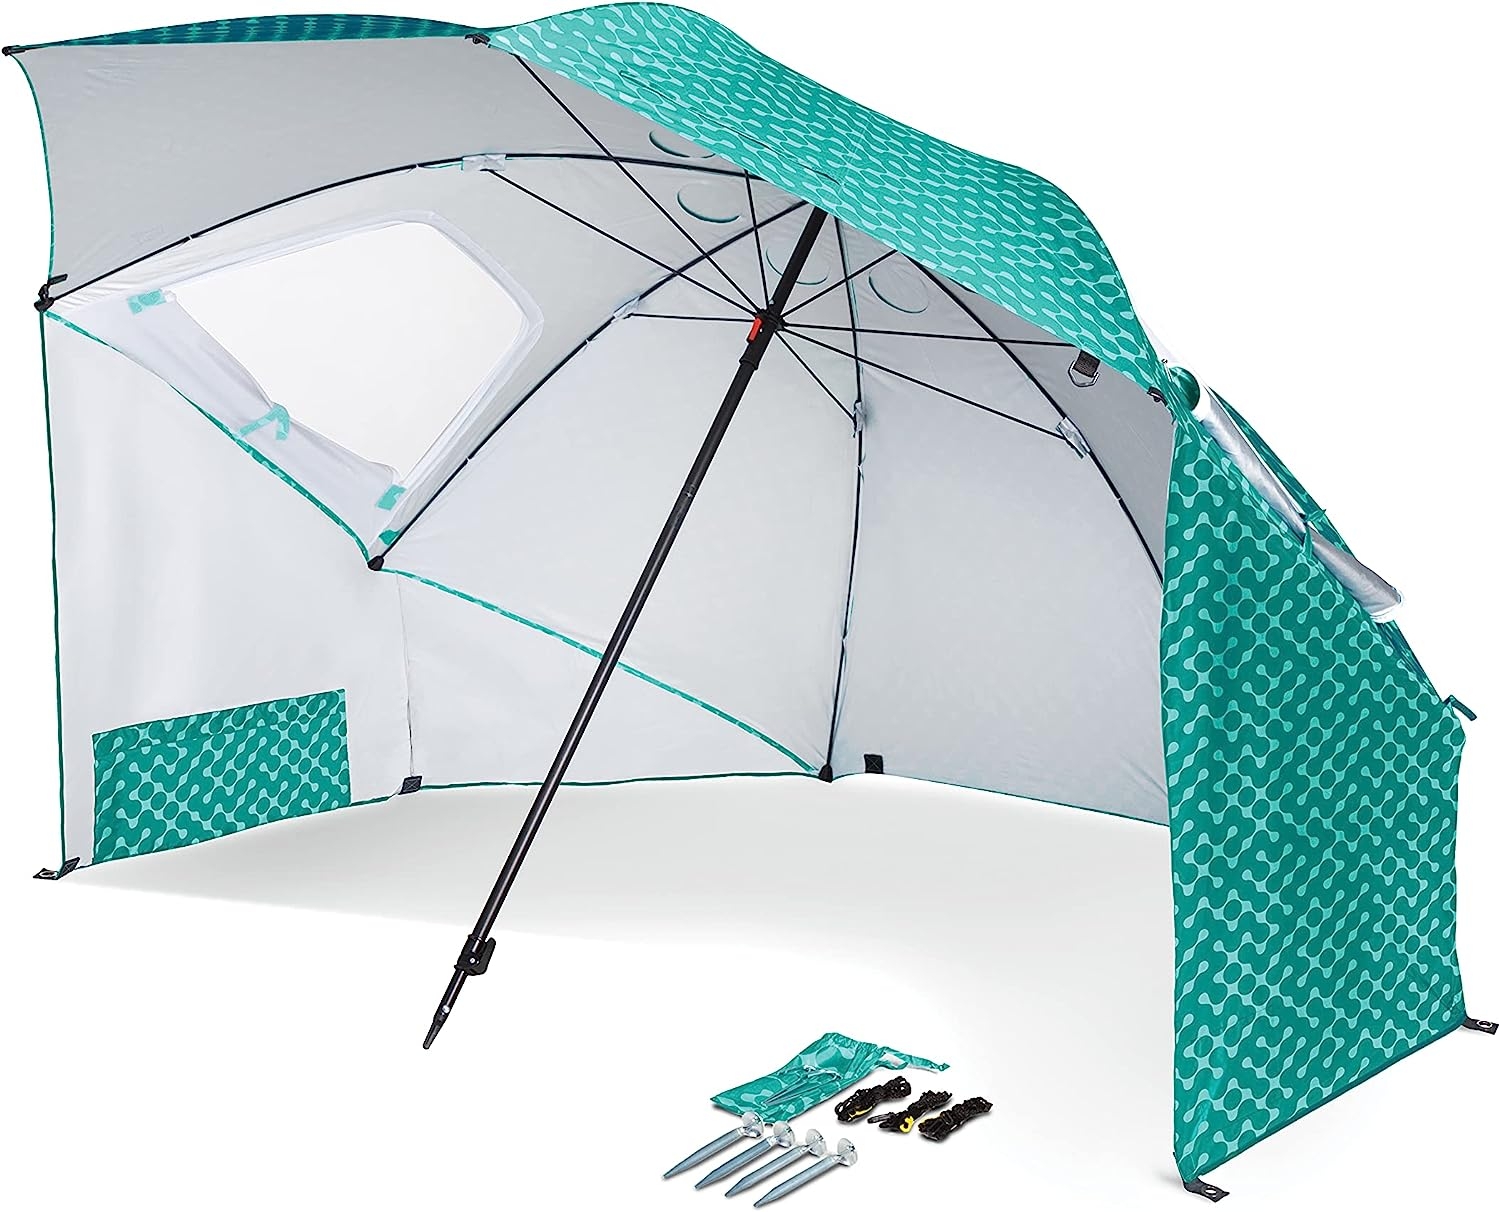 Sport-Brella Vented SPF 50+ Sun and Rain Canopy Umbrella for Beach and Sports Events (8-Foot)   price checker   price checker